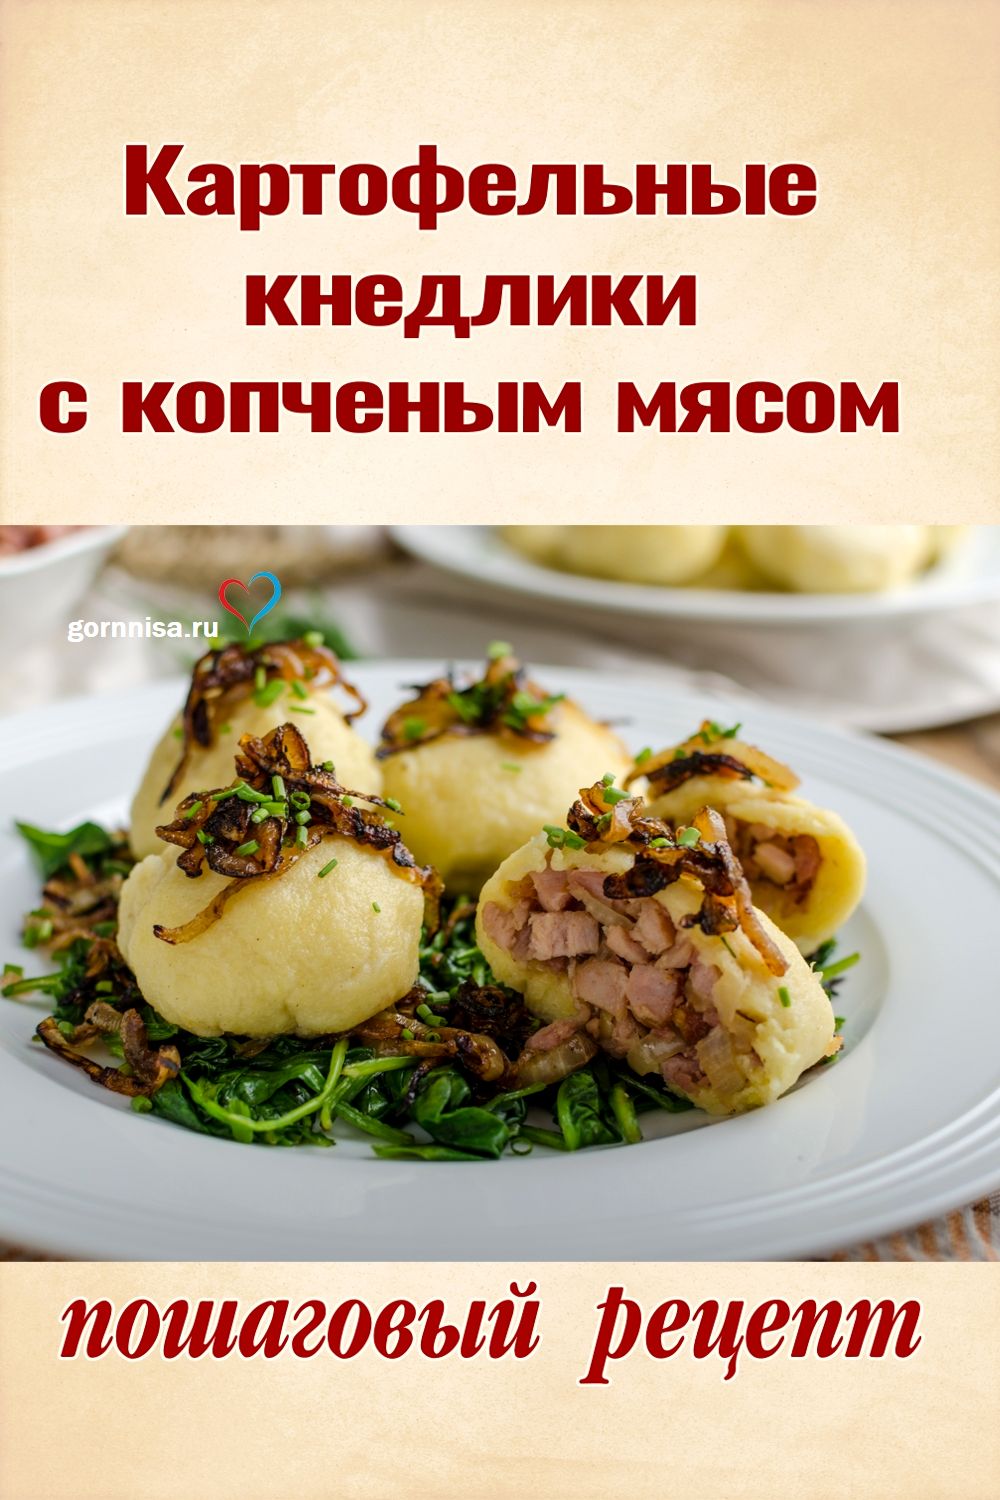 Картофельные кнедлики с копченым мясом - пошаговый рецепт https://gornnisa.ru/